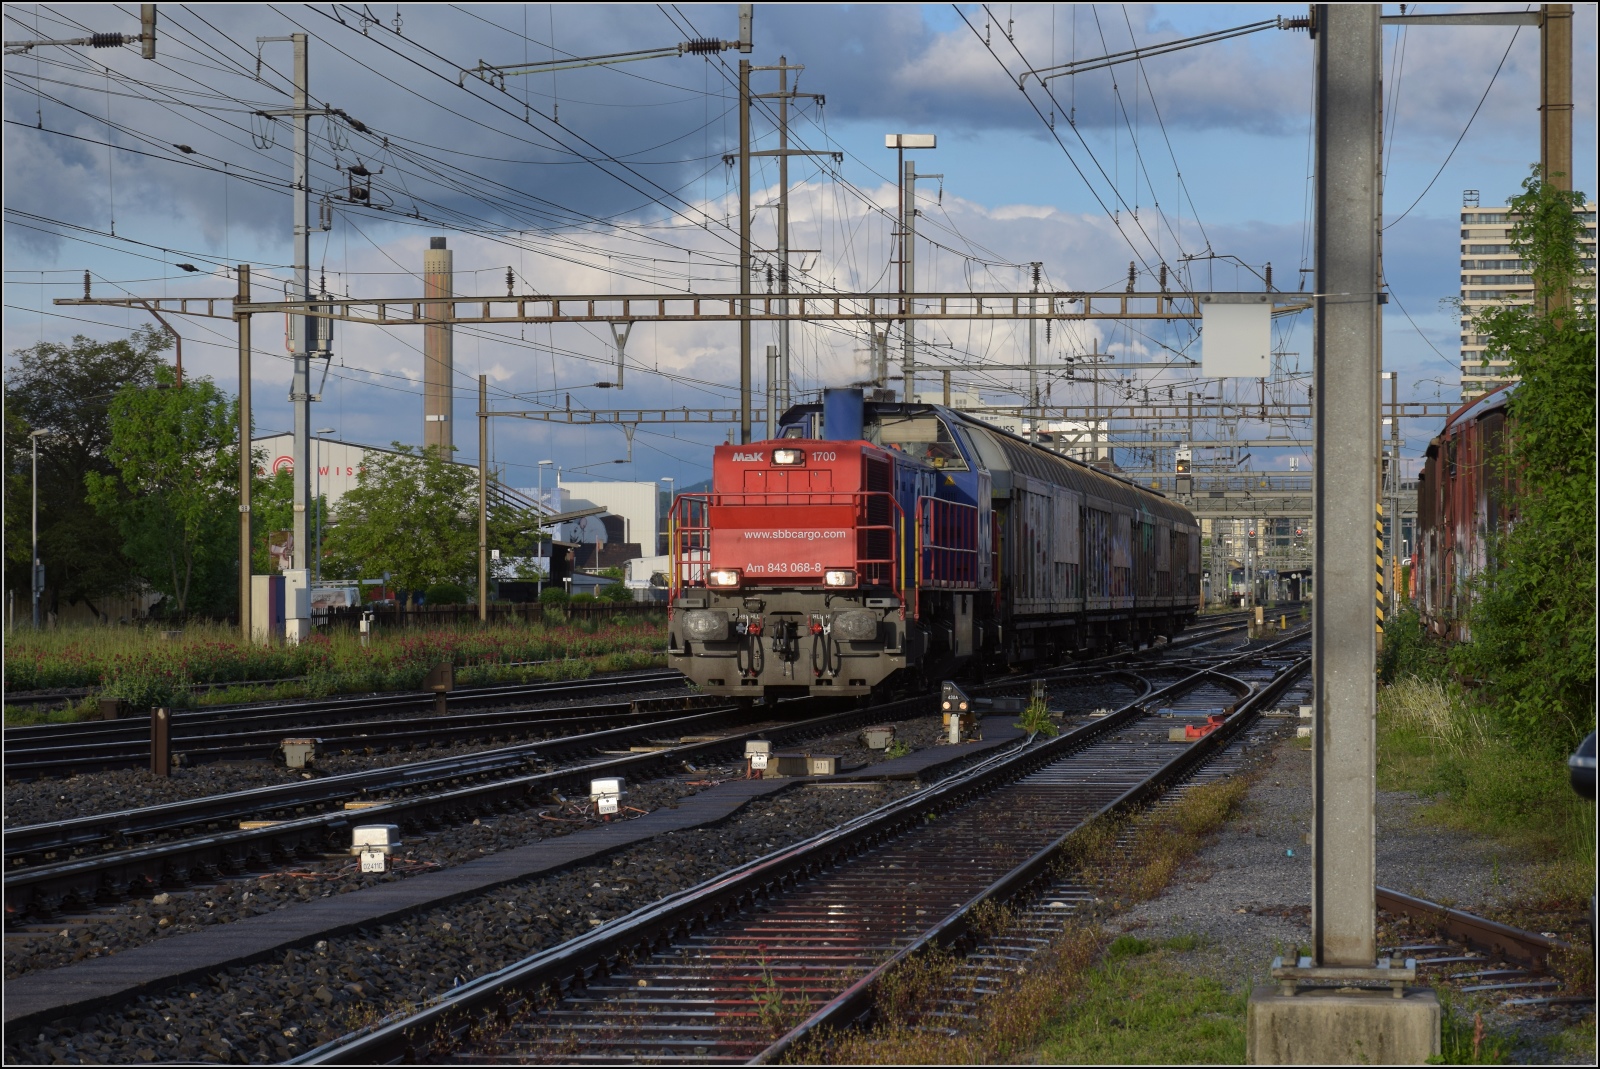 Schlechtwettertag in Pratteln. 

Ein Nahgüterzug mit Am 843 068 kommt die Hauensteinlinie entlanggefahren. Mai 2023.